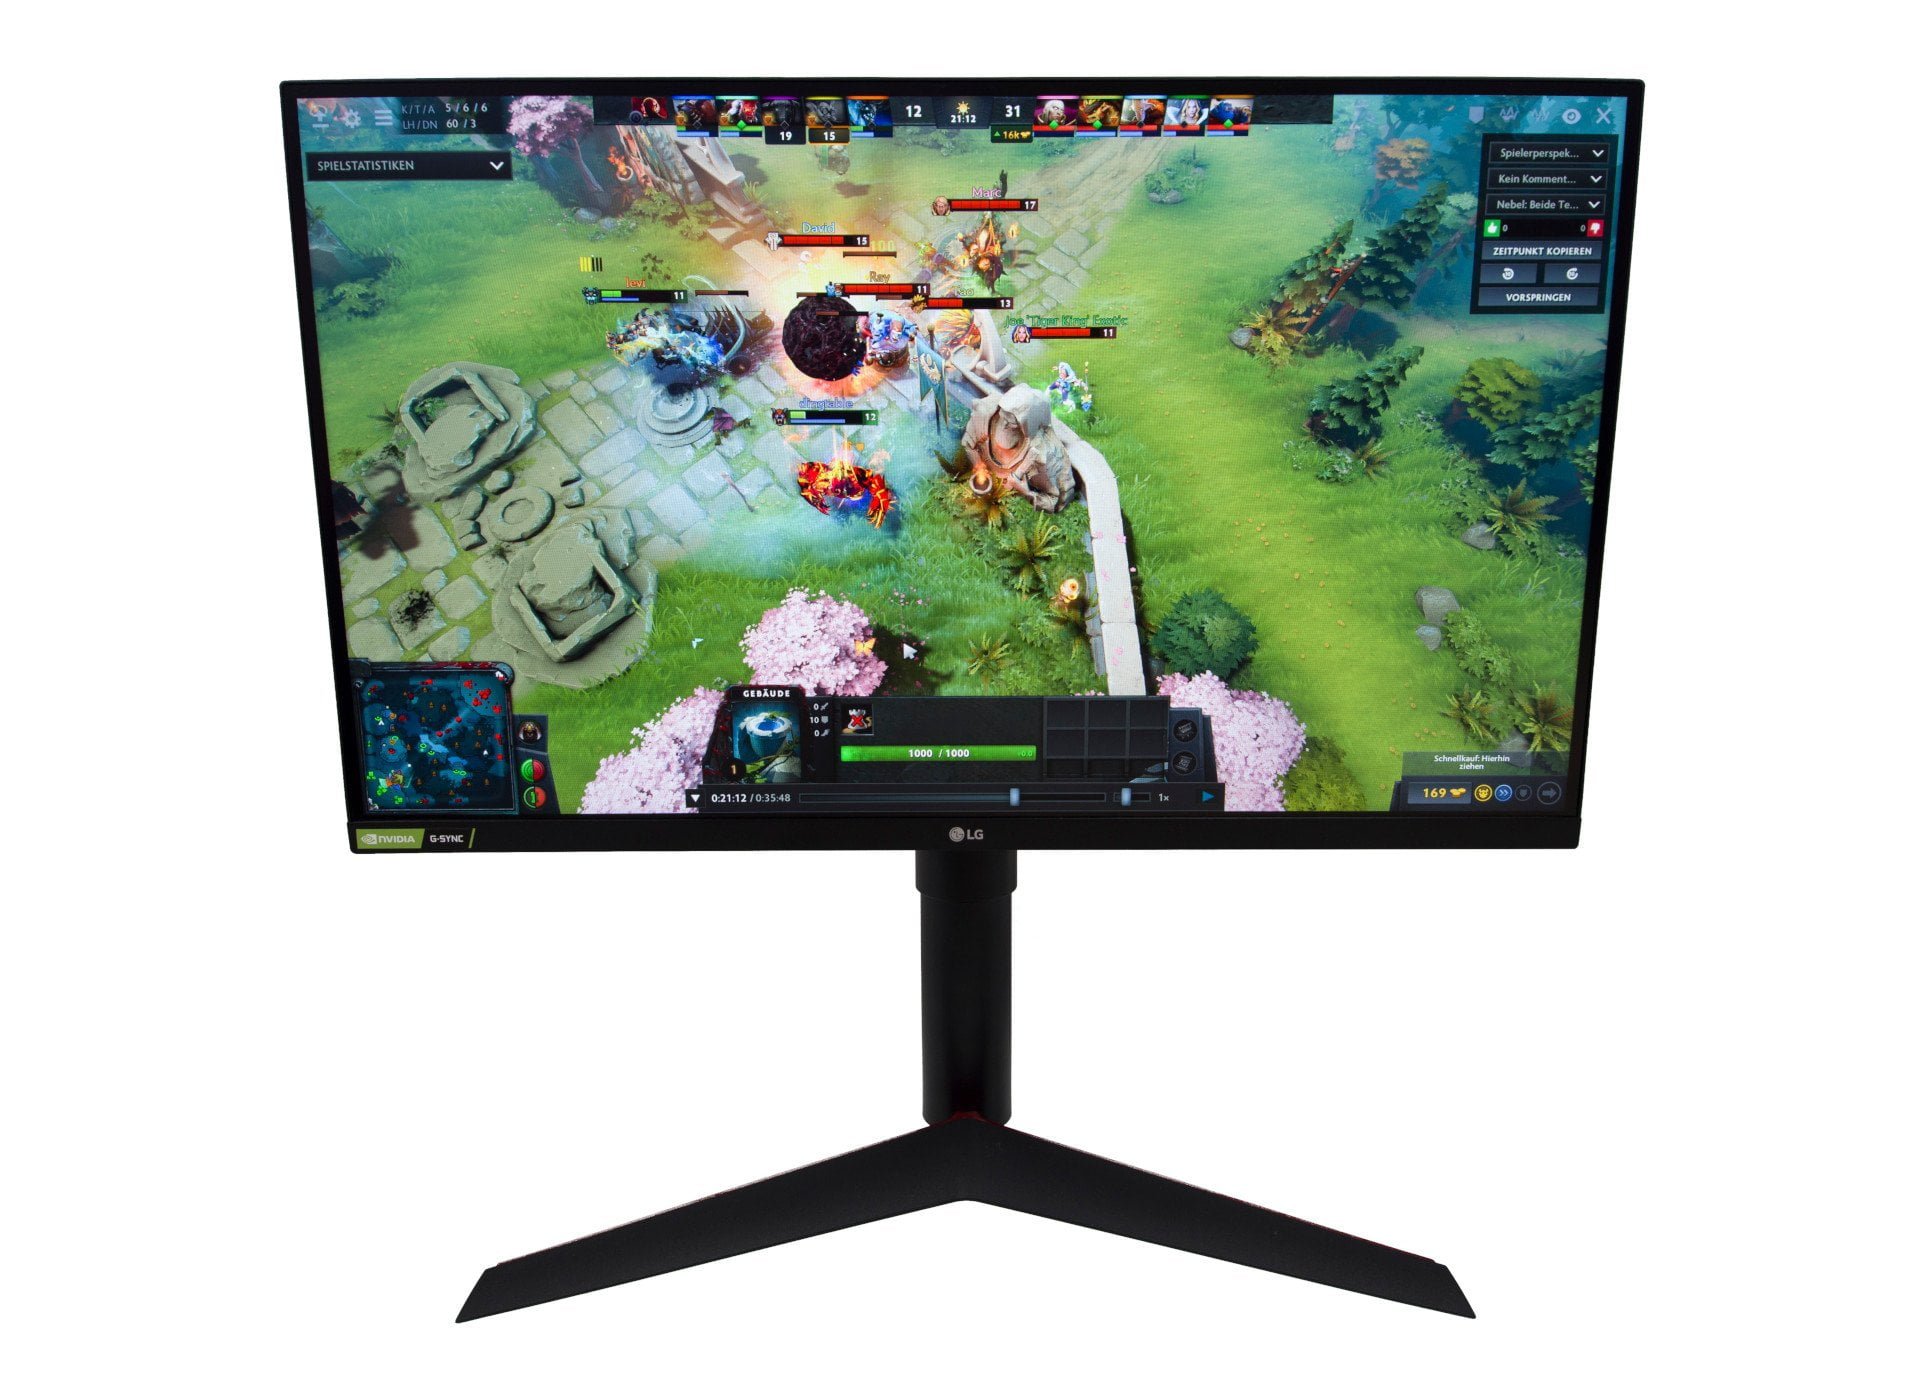 LG lanza un monitor híbrido que también es un televisor inteligente